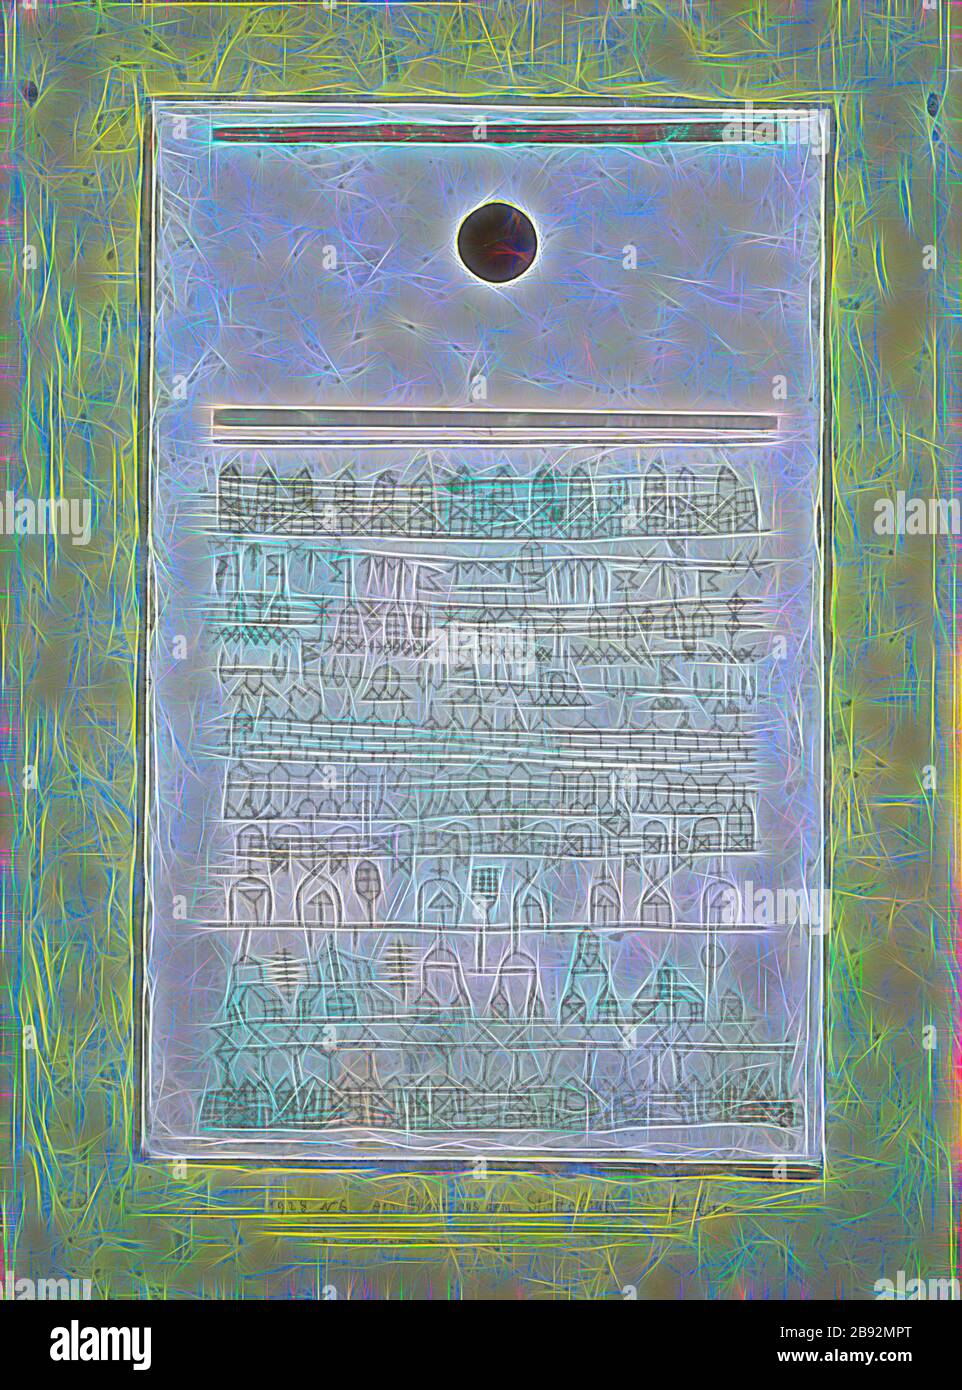 Ein Blatt aus dem Stadtbuch, von 1928, 46 (N 6), Ölfarbe auf Papier auf Karton auf zweiter Box auf Trage genagelt, ursprüngliche Rahmenständer, 42,5 x 31,5 cm, auf der zweiten Box unten rechts signiert: Kleeblatt, auf der zweiten Box unten in der Mitte eingeschrieben: 28 N 6 ein Blatt aus dem Stadtbuch, Paul Klee, Münchenbuchsee/Bern 1879-1940 Muralto B. Locarno/Tessin, von Gibon neu vorgestellt, Design von warmem, fröhlichem Glanz von Helligkeit und Lichtstrahlen. Klassische Kunst mit moderner Note neu erfunden. Fotografie, inspiriert von Futurismus, die dynamische Energie moderner Technologie, Bewegung, Geschwindigkeit und Revolution des Kultu umfasst Stockfoto